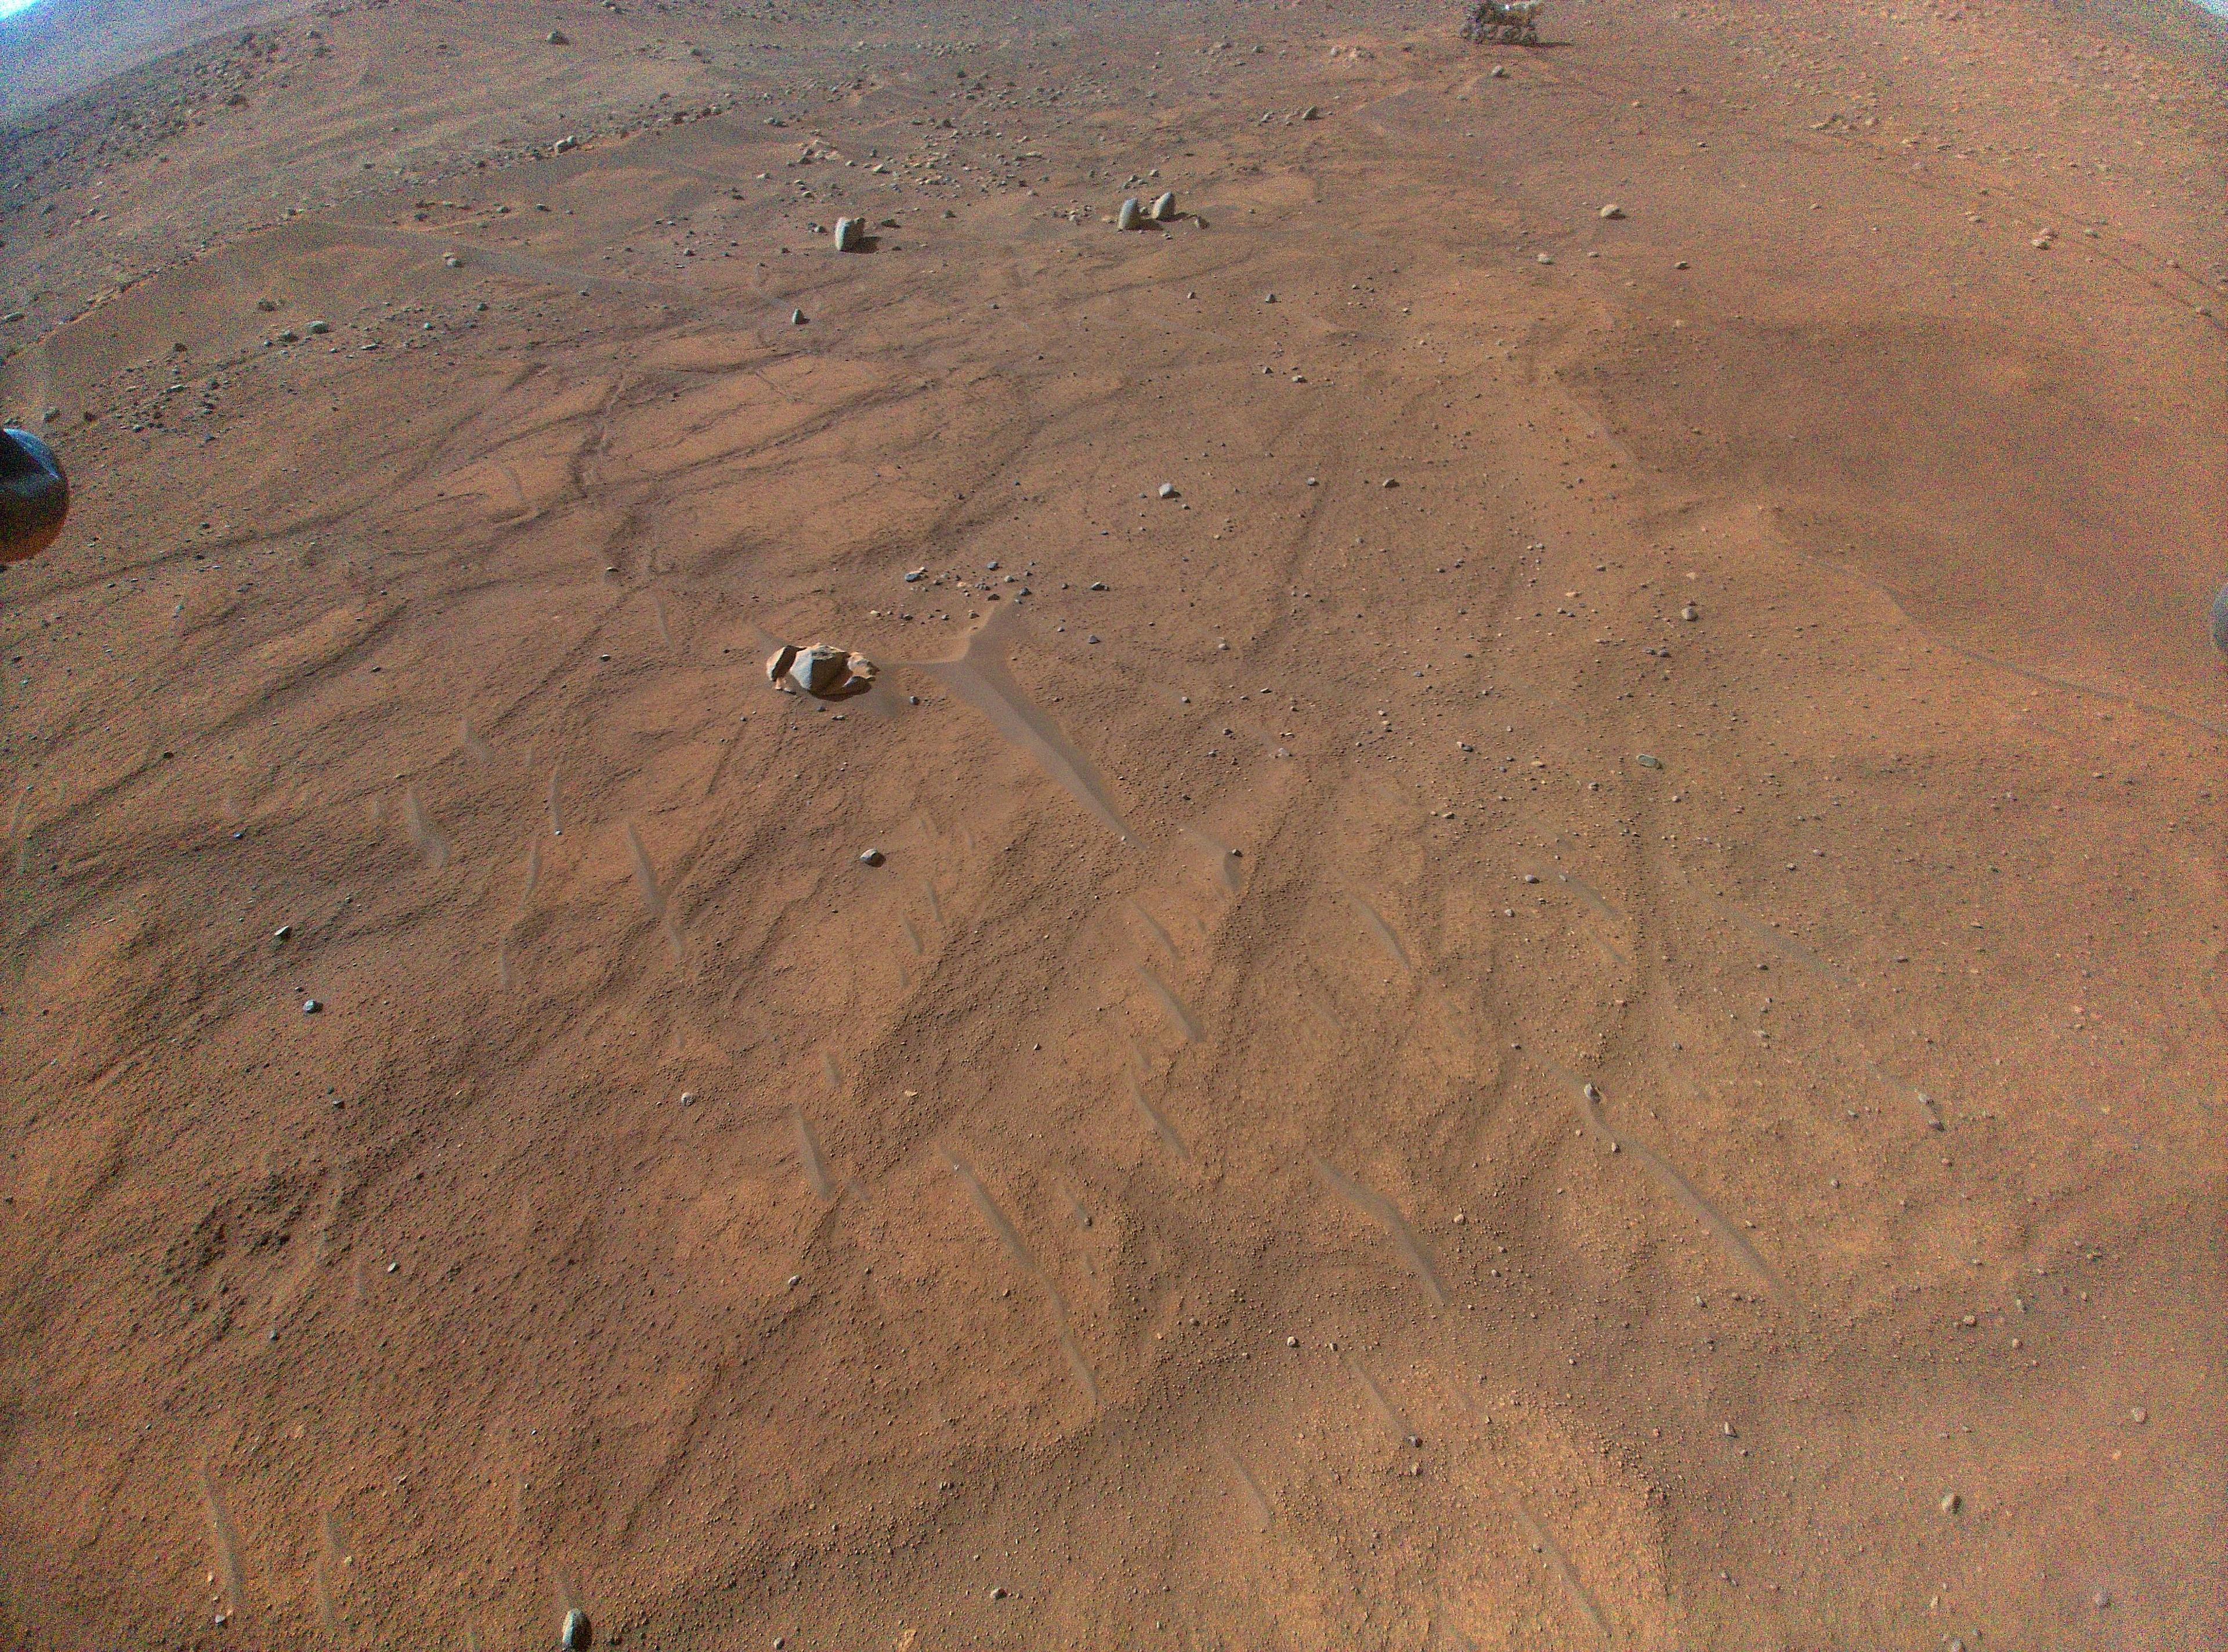 رقعة من سطح المرّيخ تظهر بلونٍ برتقاليٍّ صدئ بينما تتناثر بعض الصخور عليها وتظهر في البعيد عربة جوالة وتطل بعض أقدام المروحيّة من الجوانب